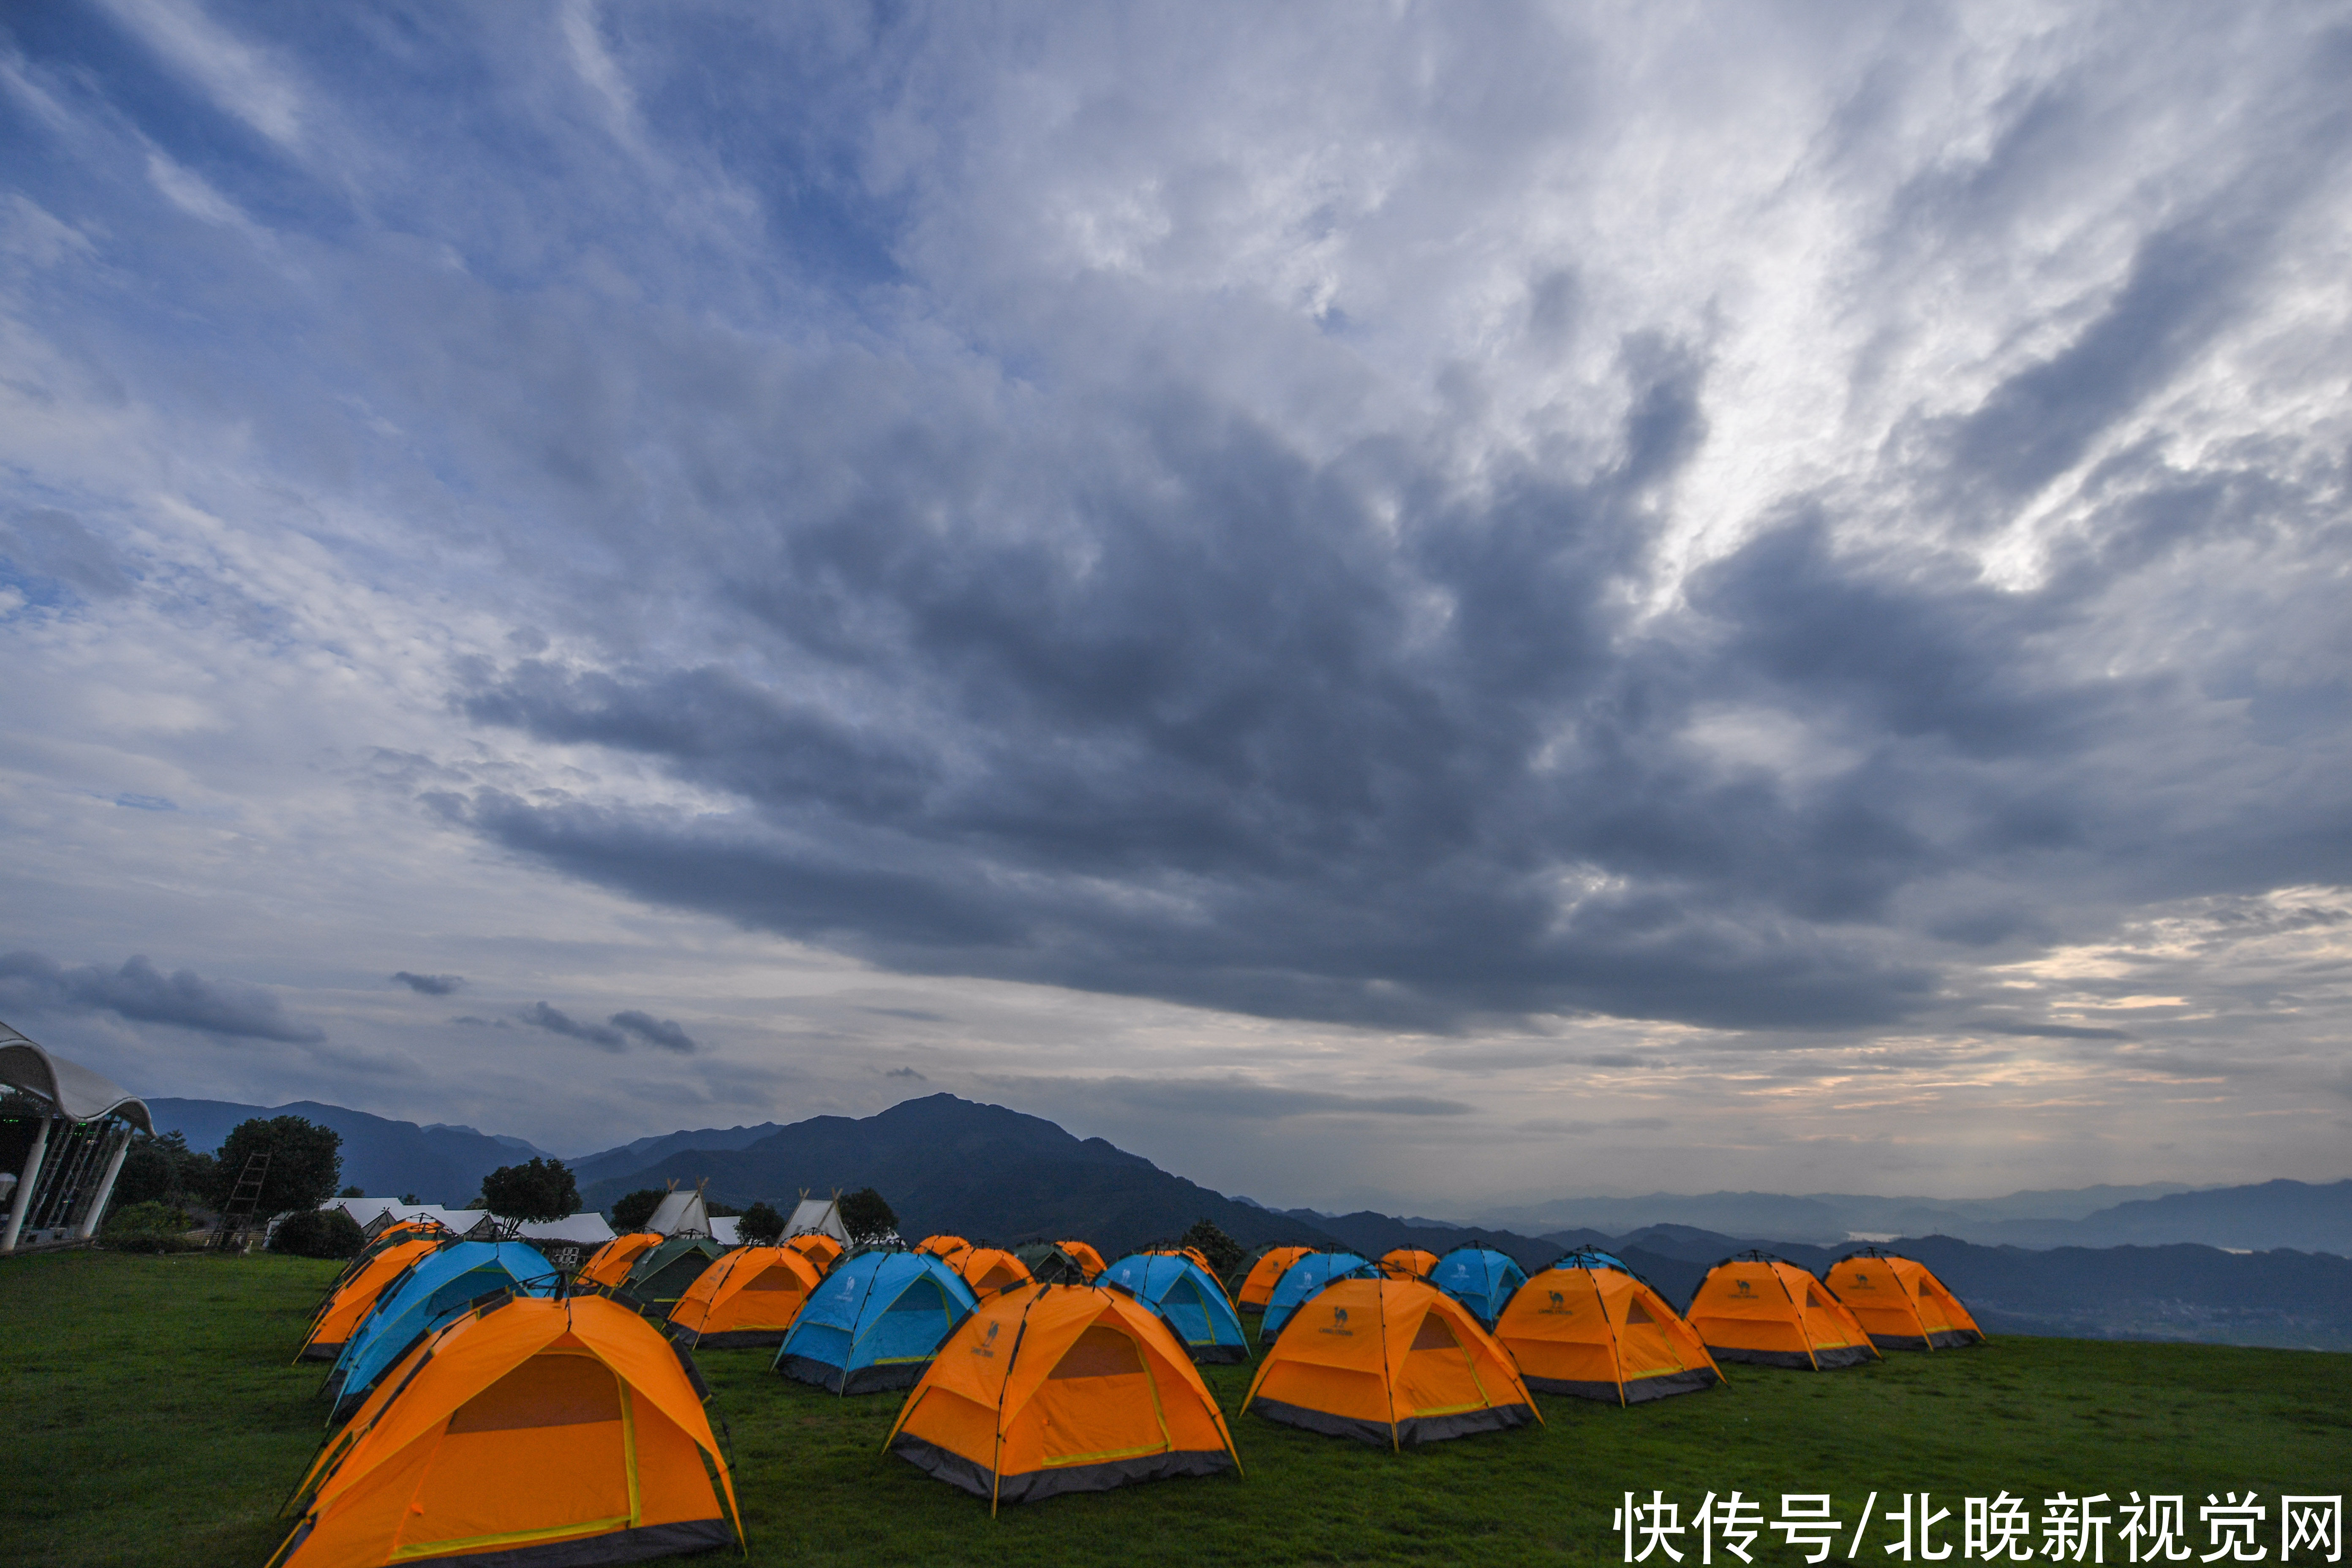 露营 新潮旅游度假方式受追捧，北京成露营关注热度最高城市